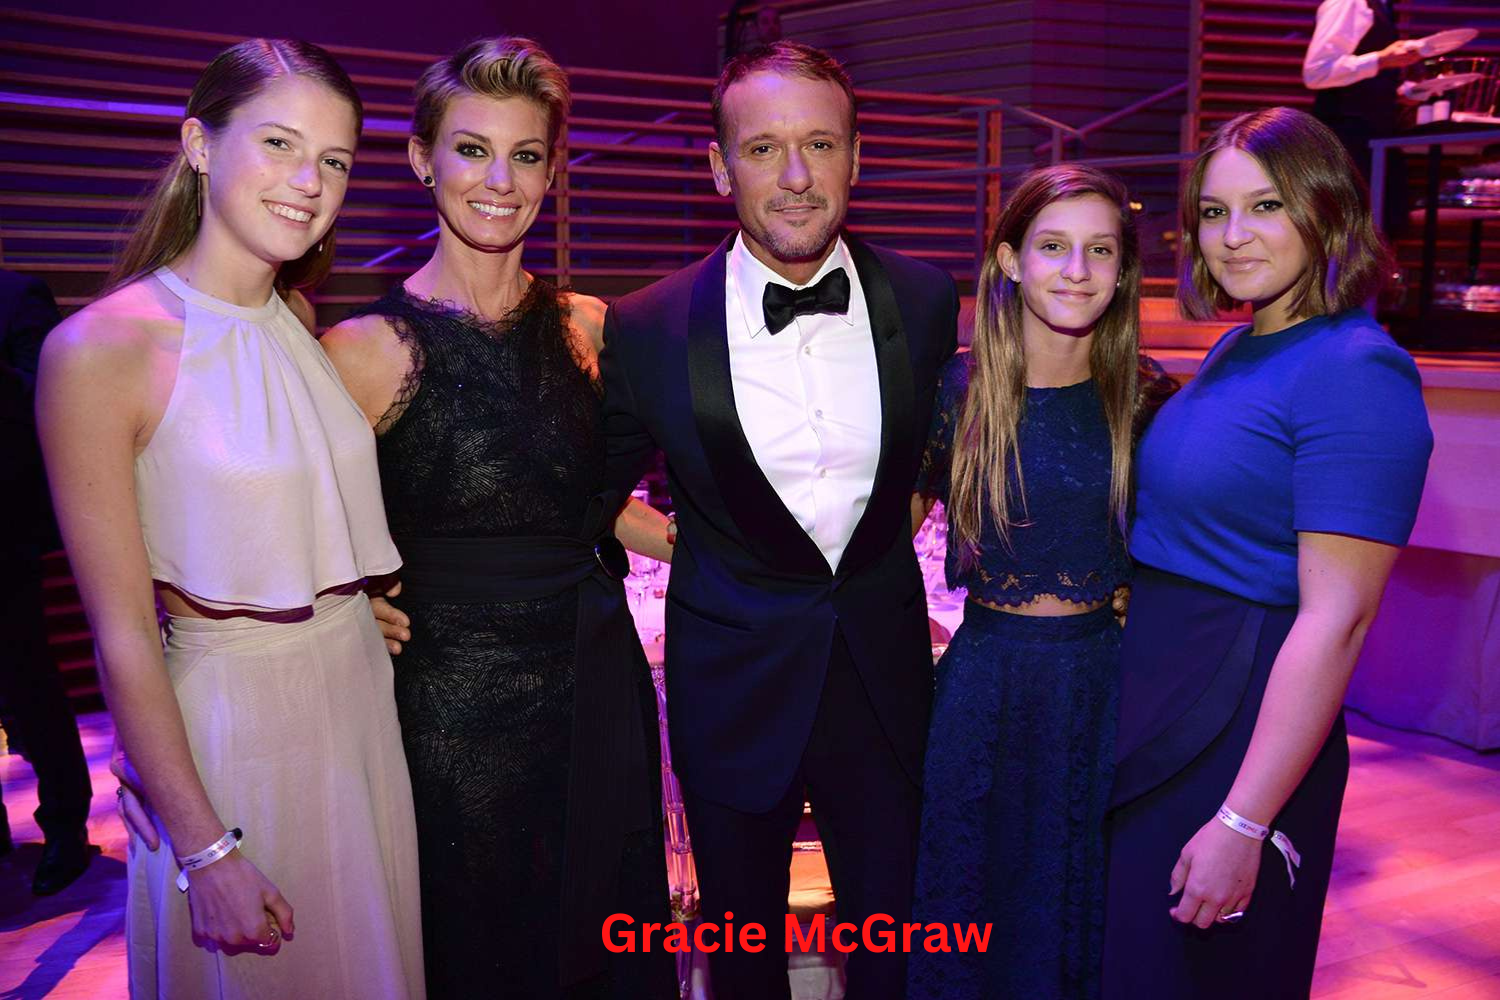 Gracie McGraw: Know About Gracie McGraw